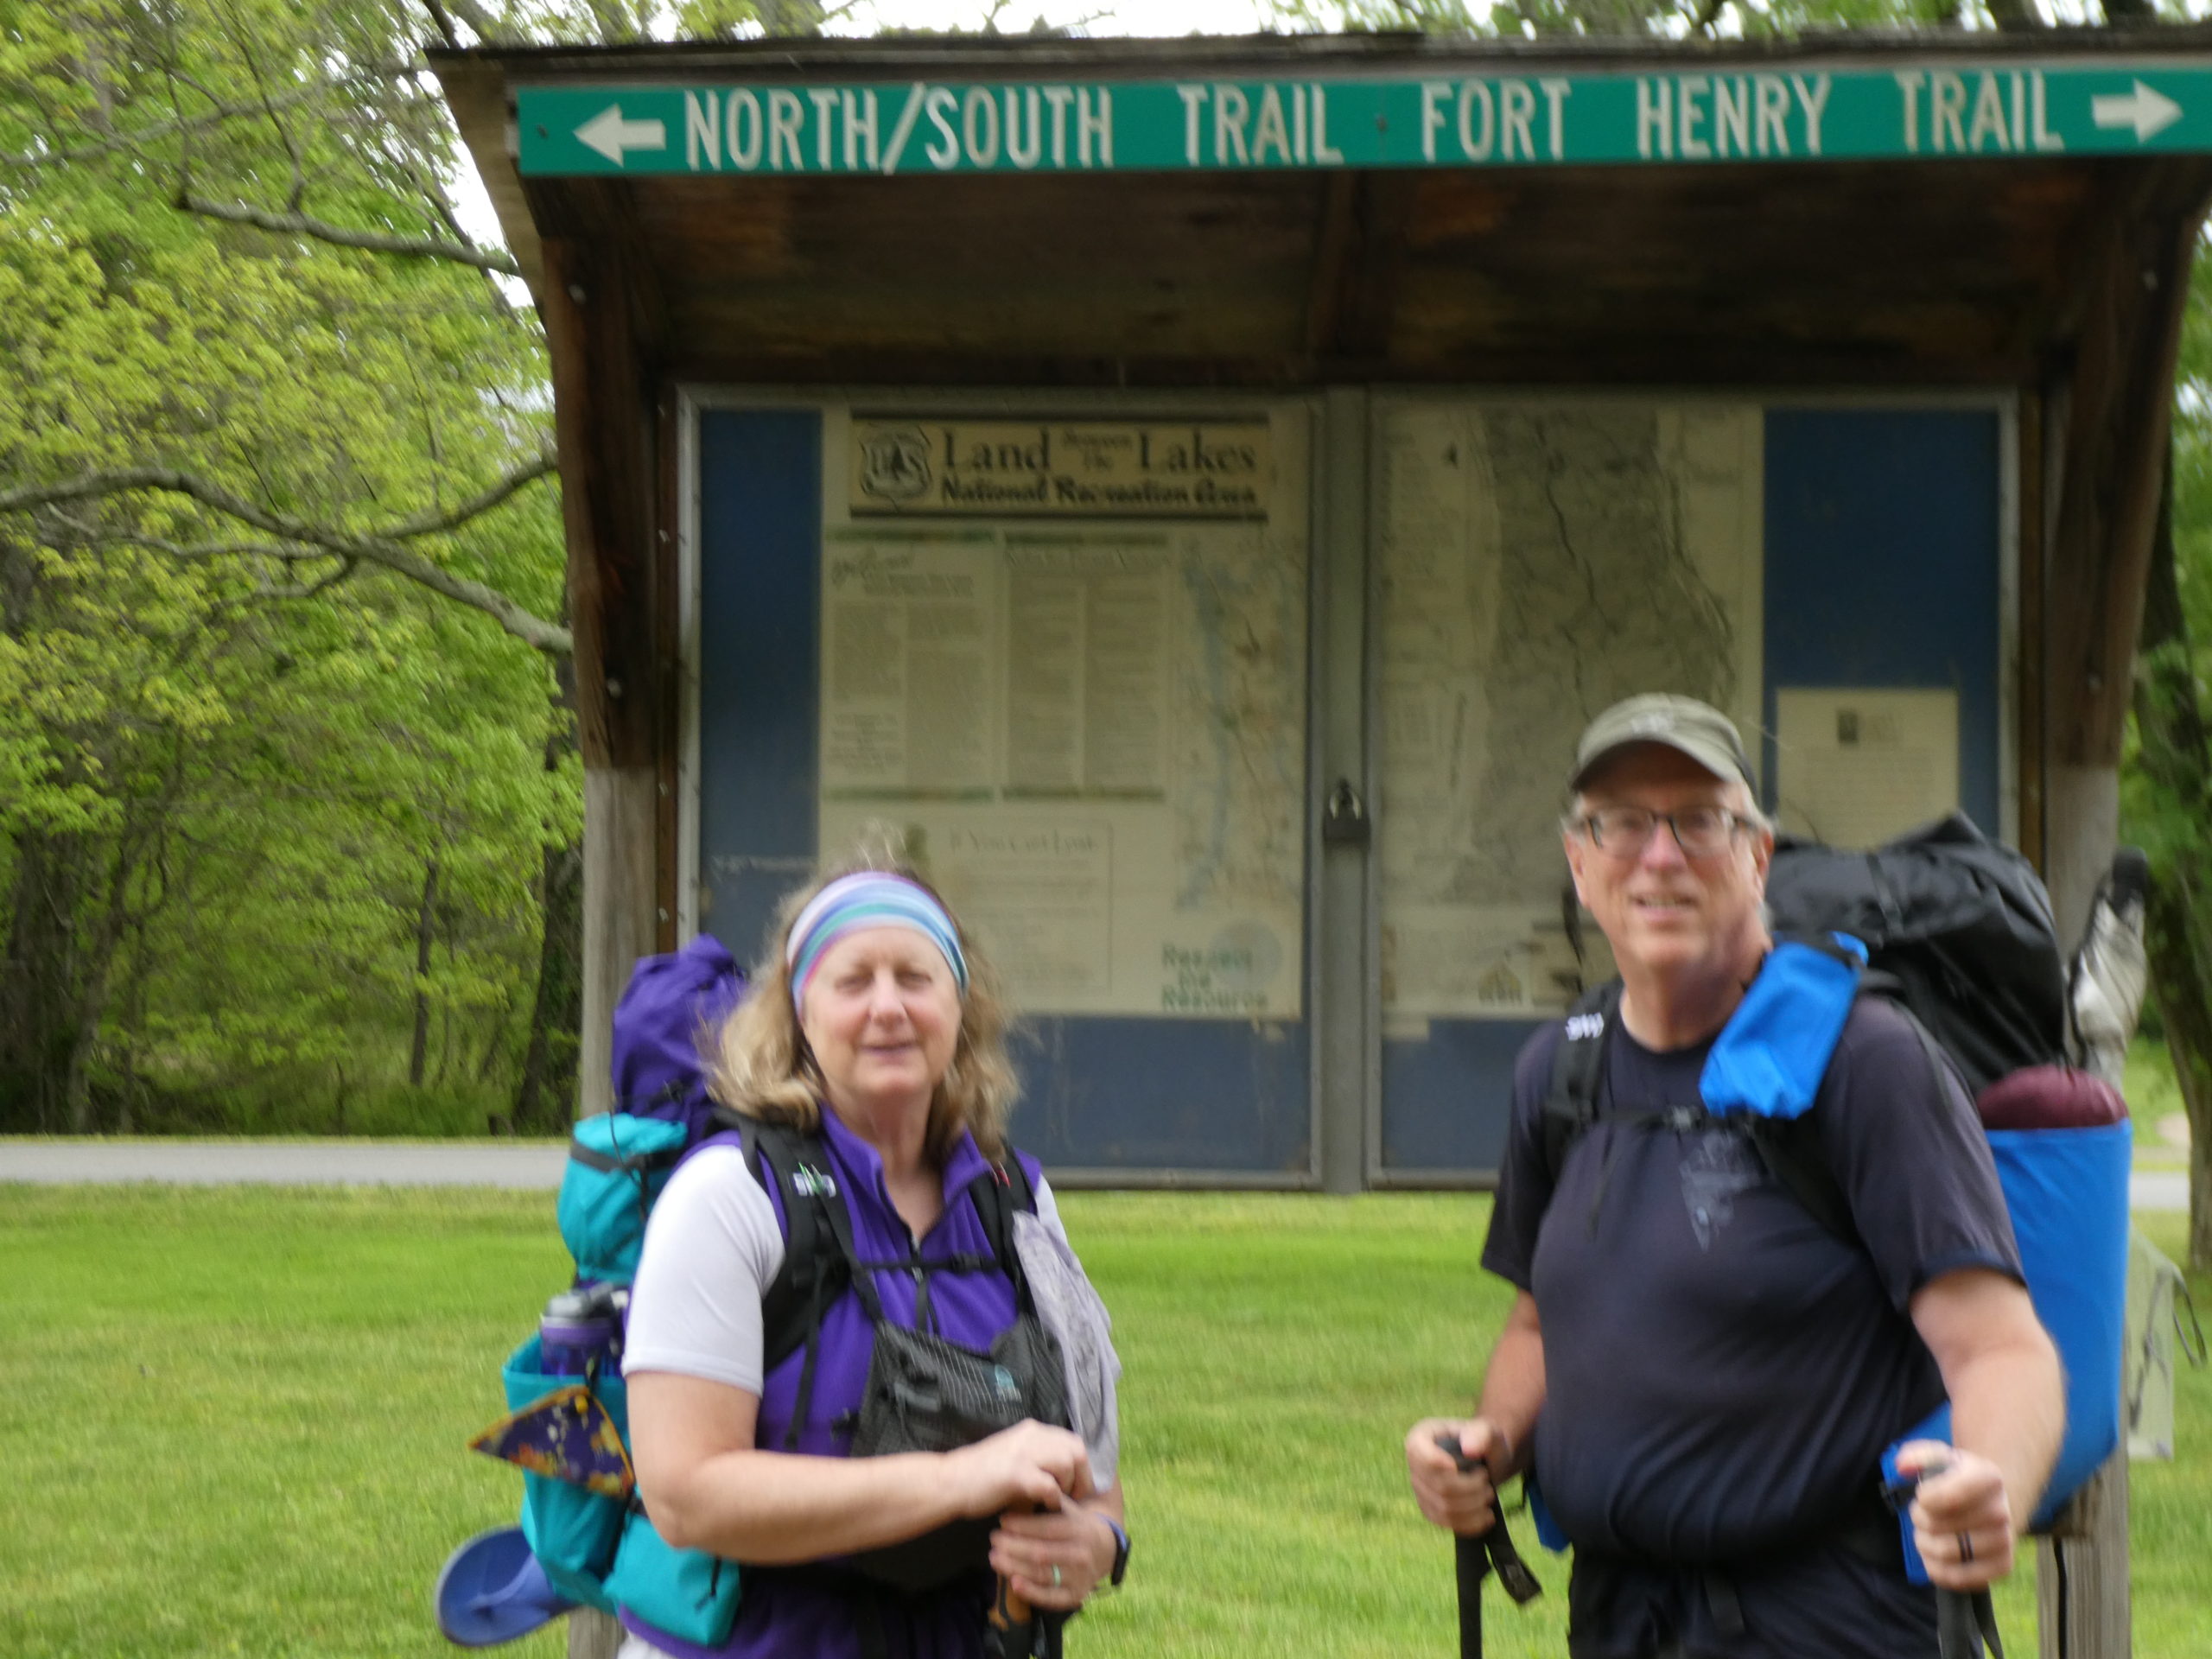 Day 1, Iron Mountain Shelter—10.9 miles